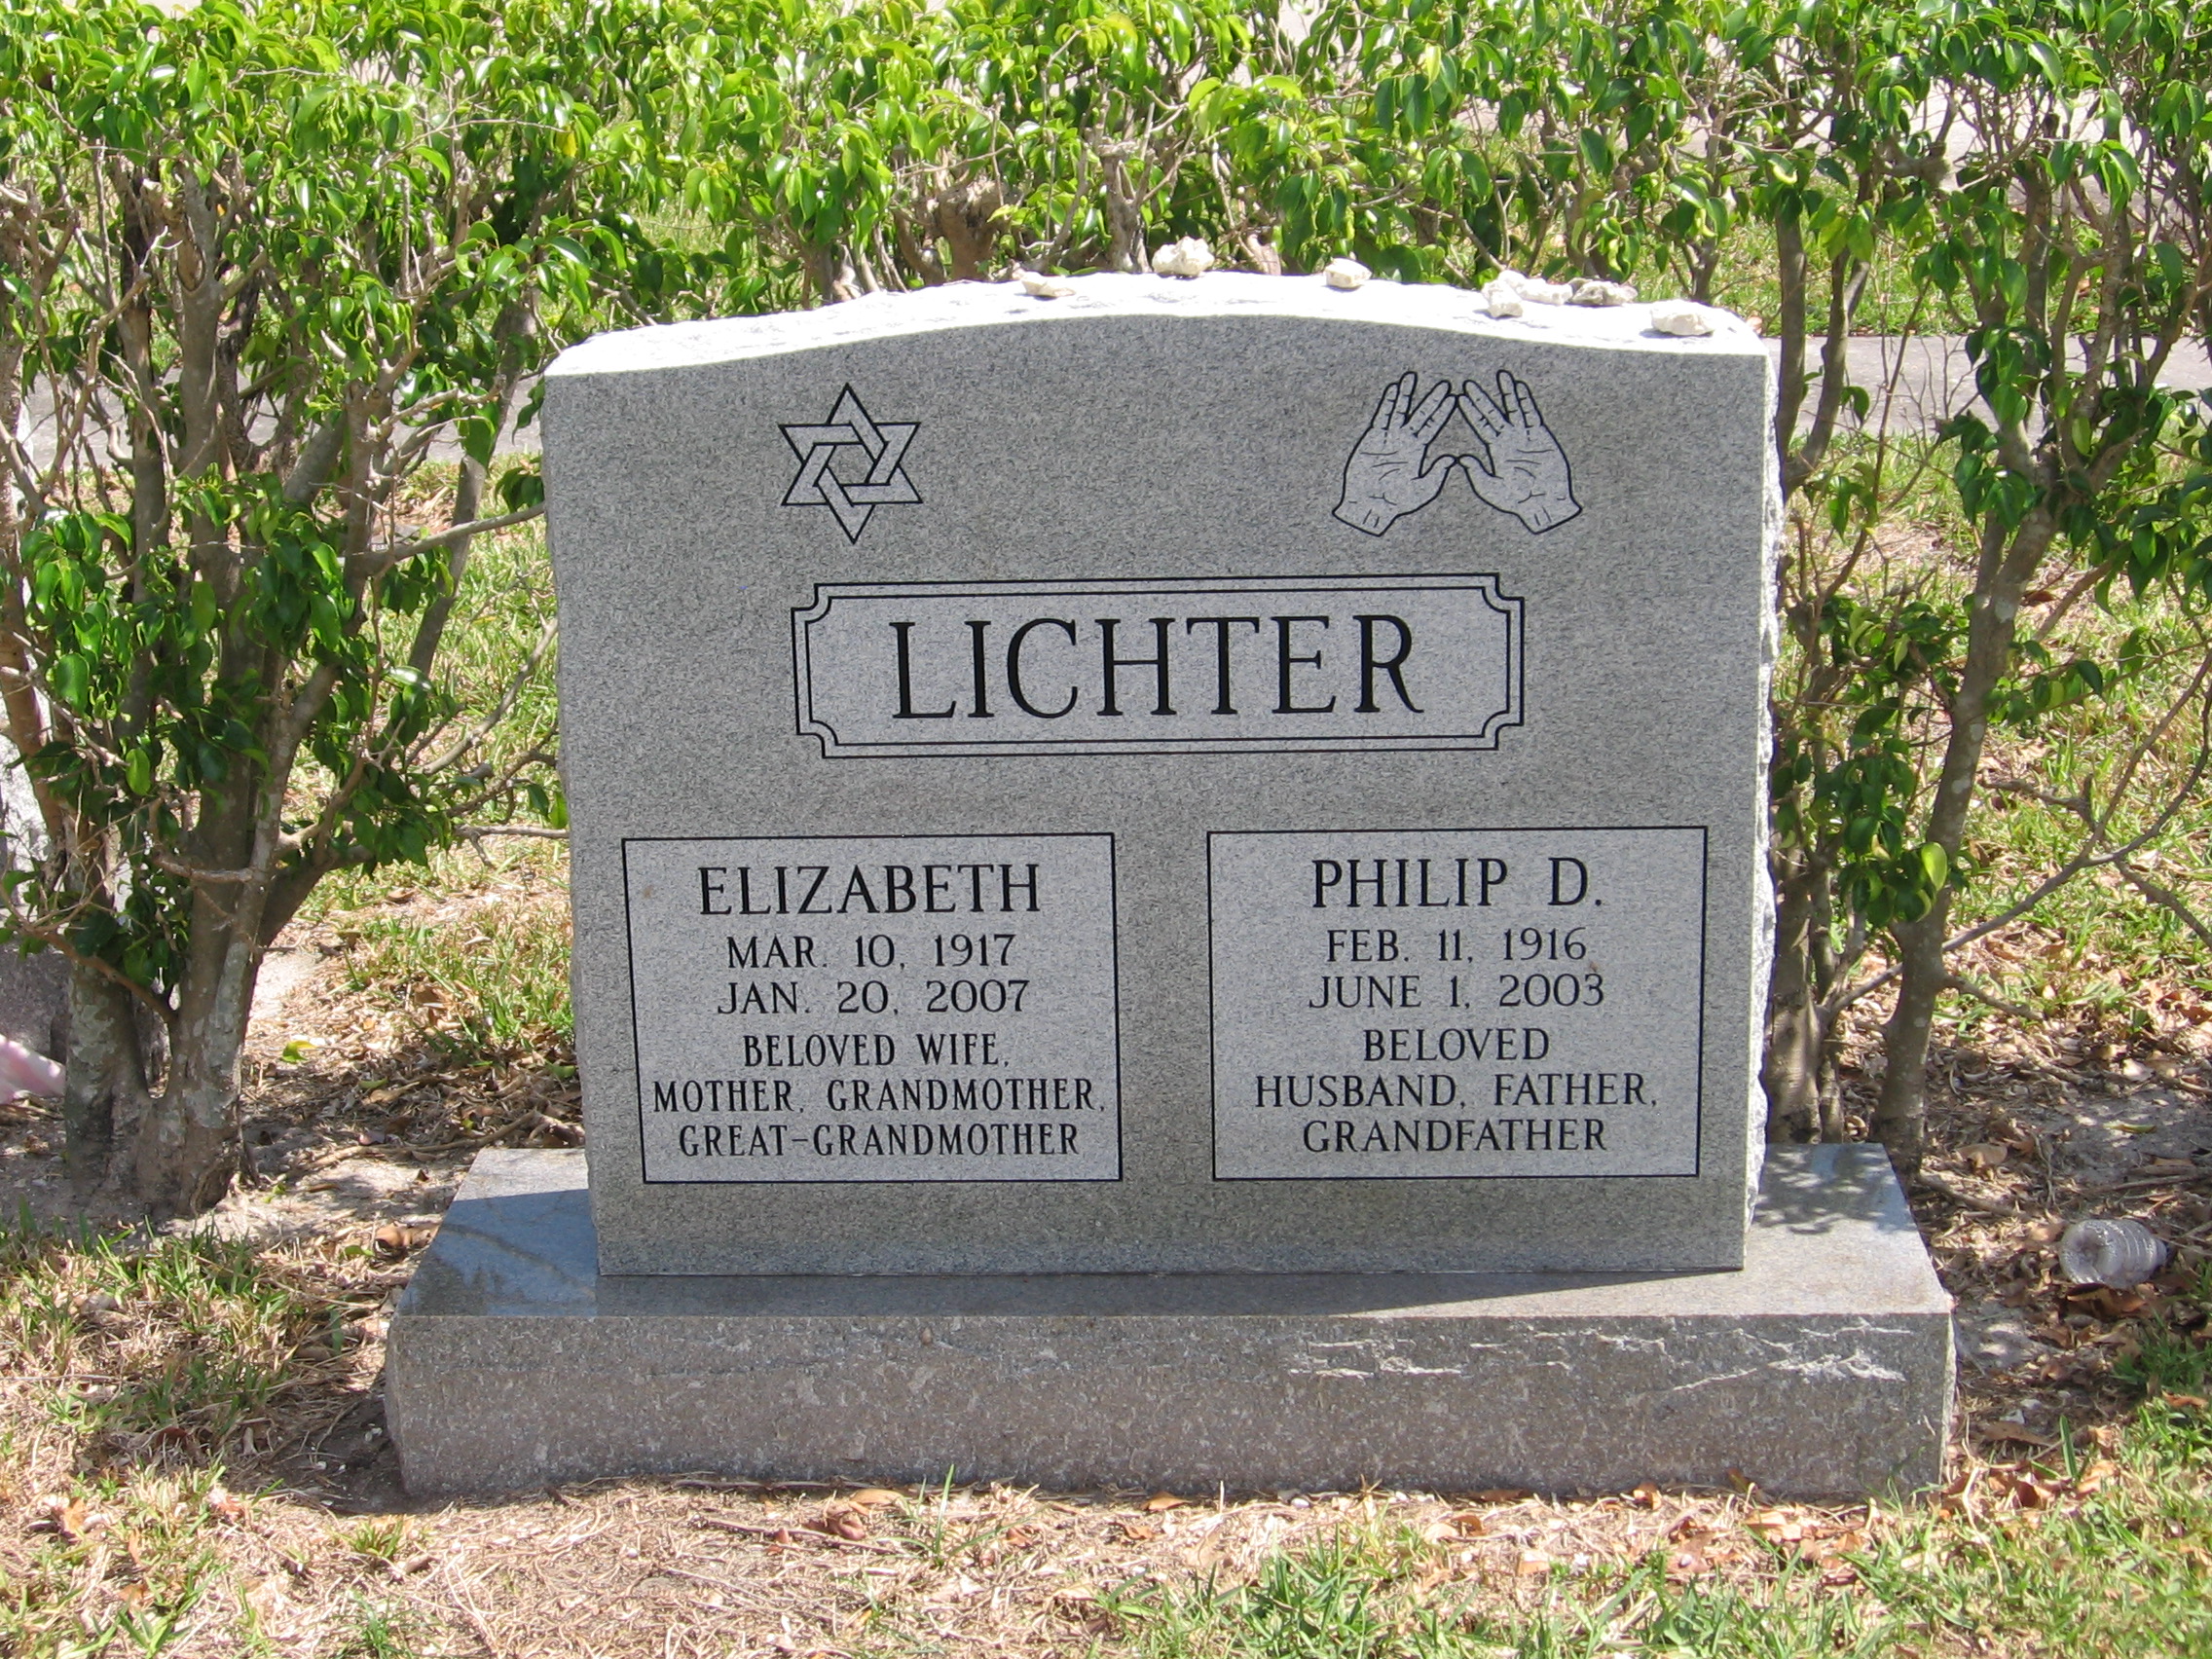 Elizabeth Lichter